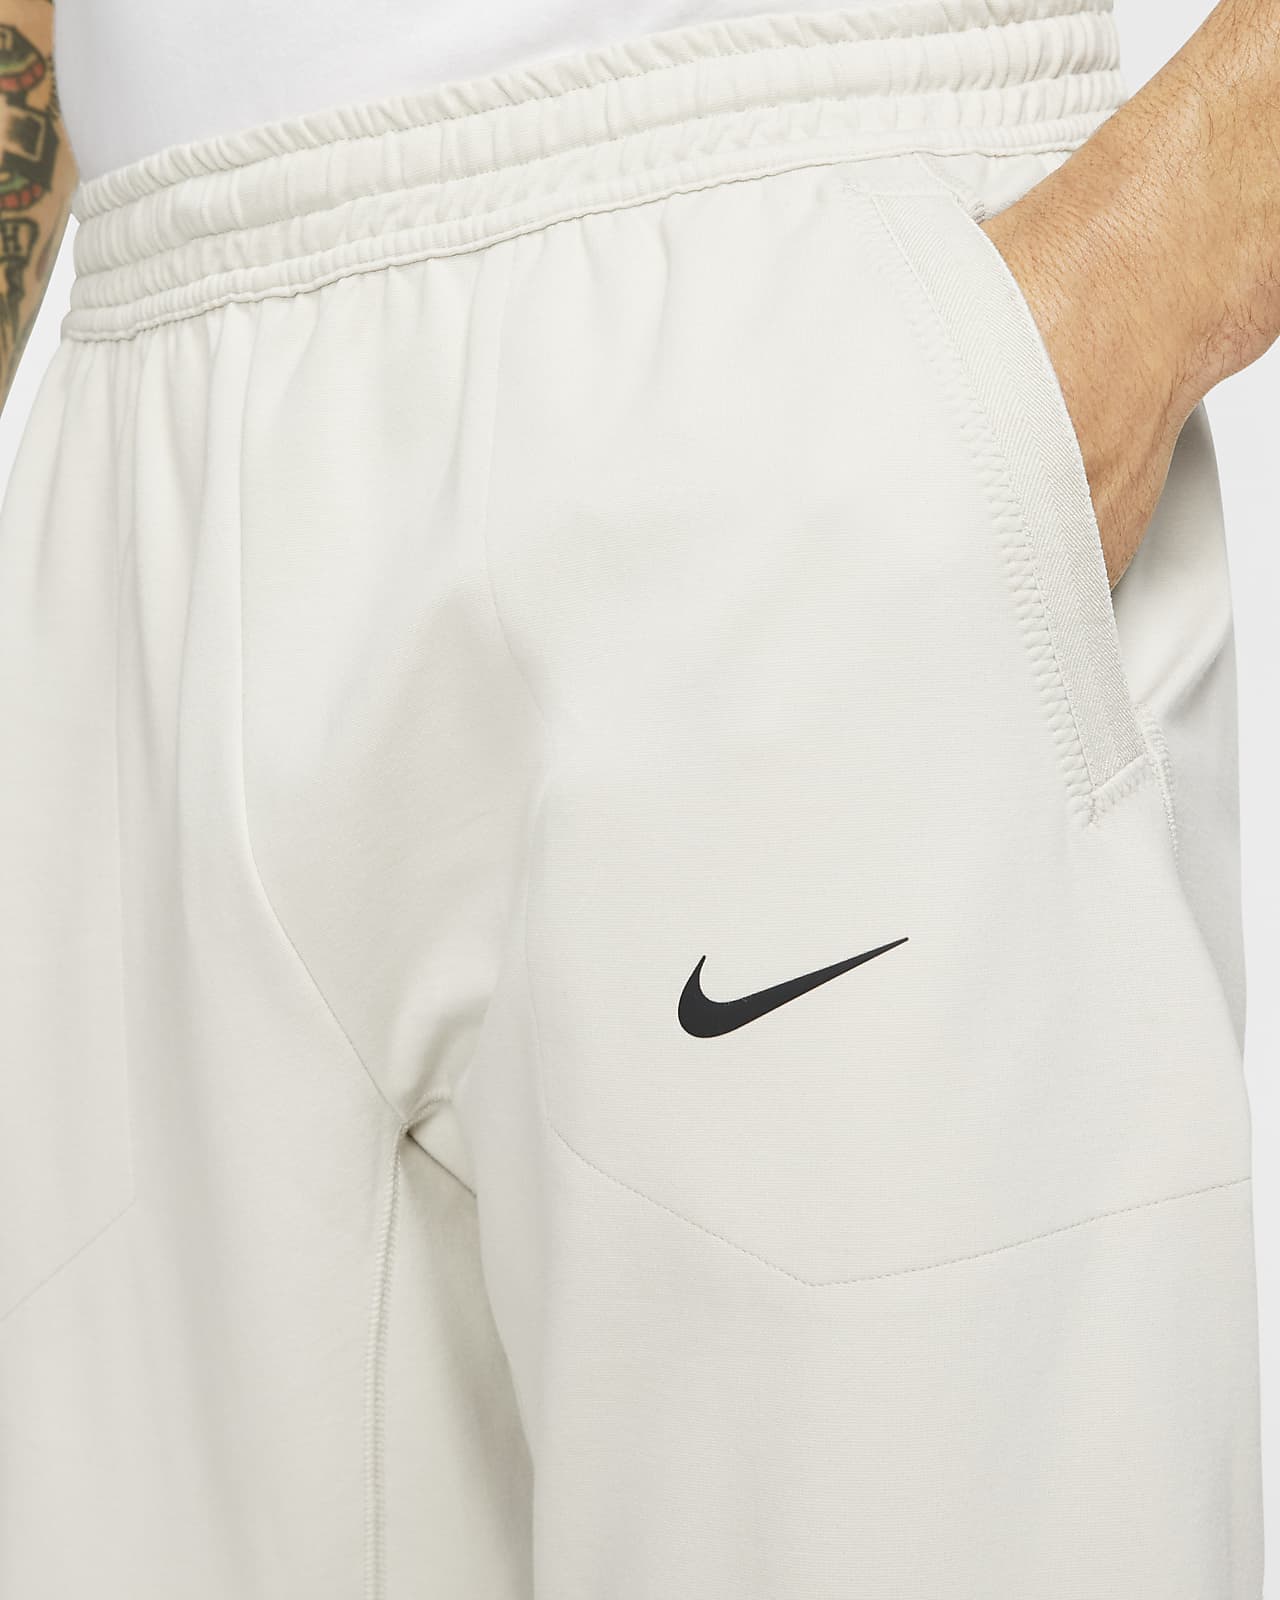 Nike Sportswear Tech Pack Men's Engineered Knit Short-Sleeve